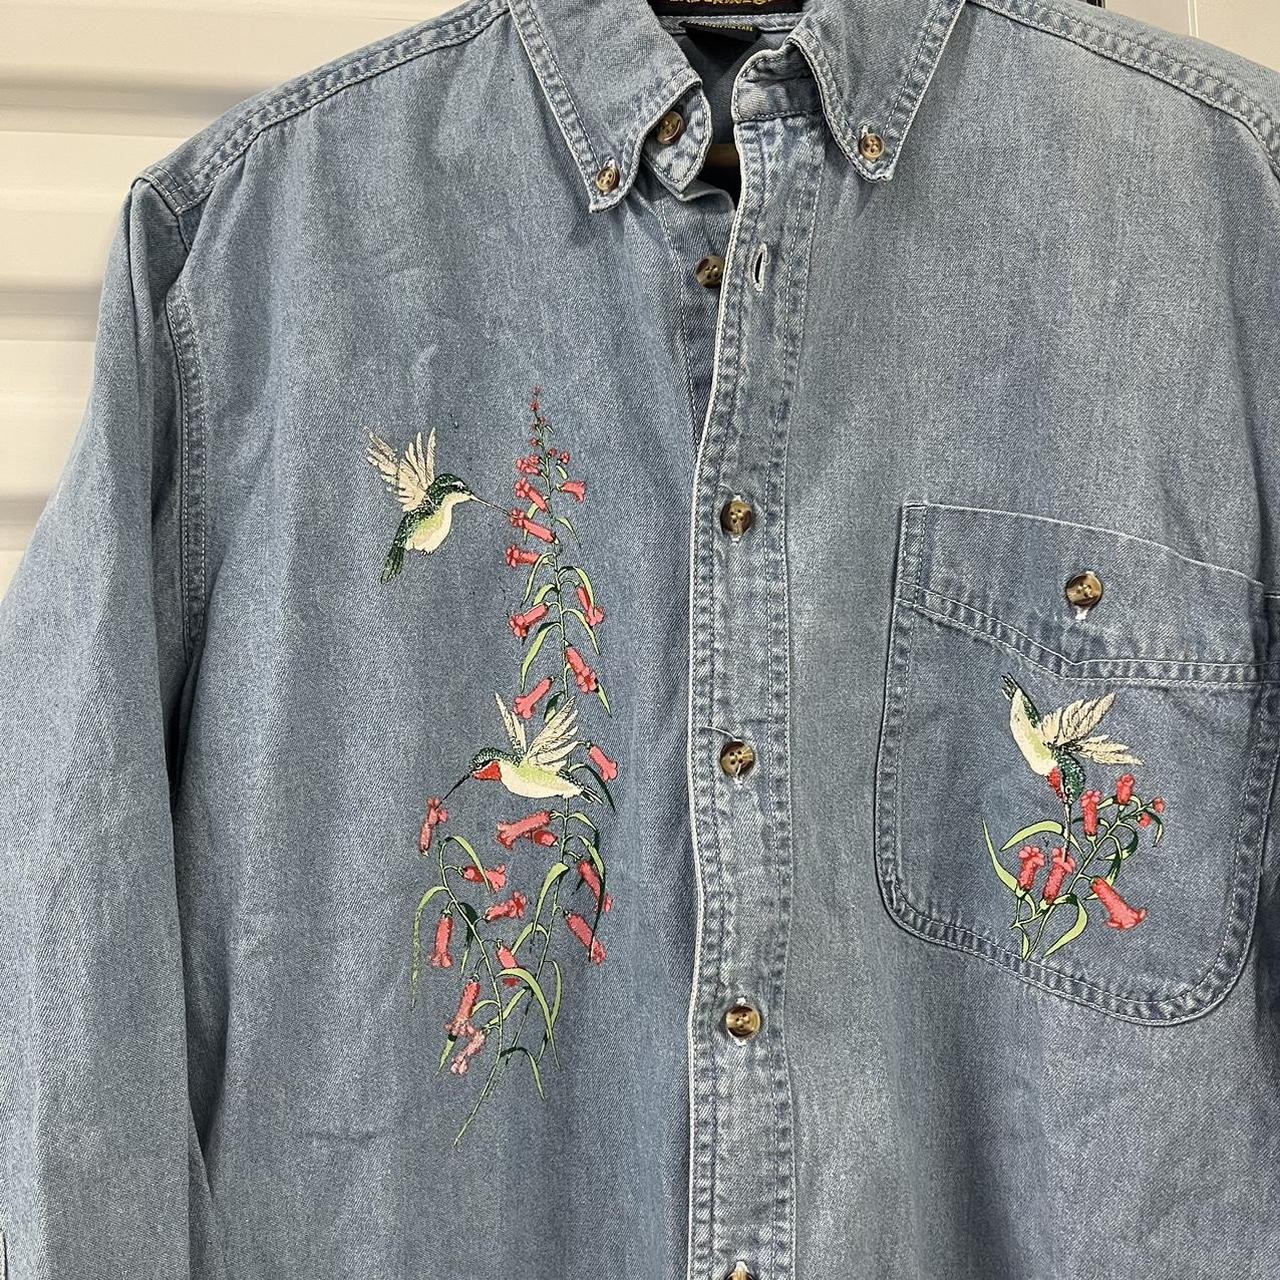 vintage wrangler denim button up shirt great - Depop